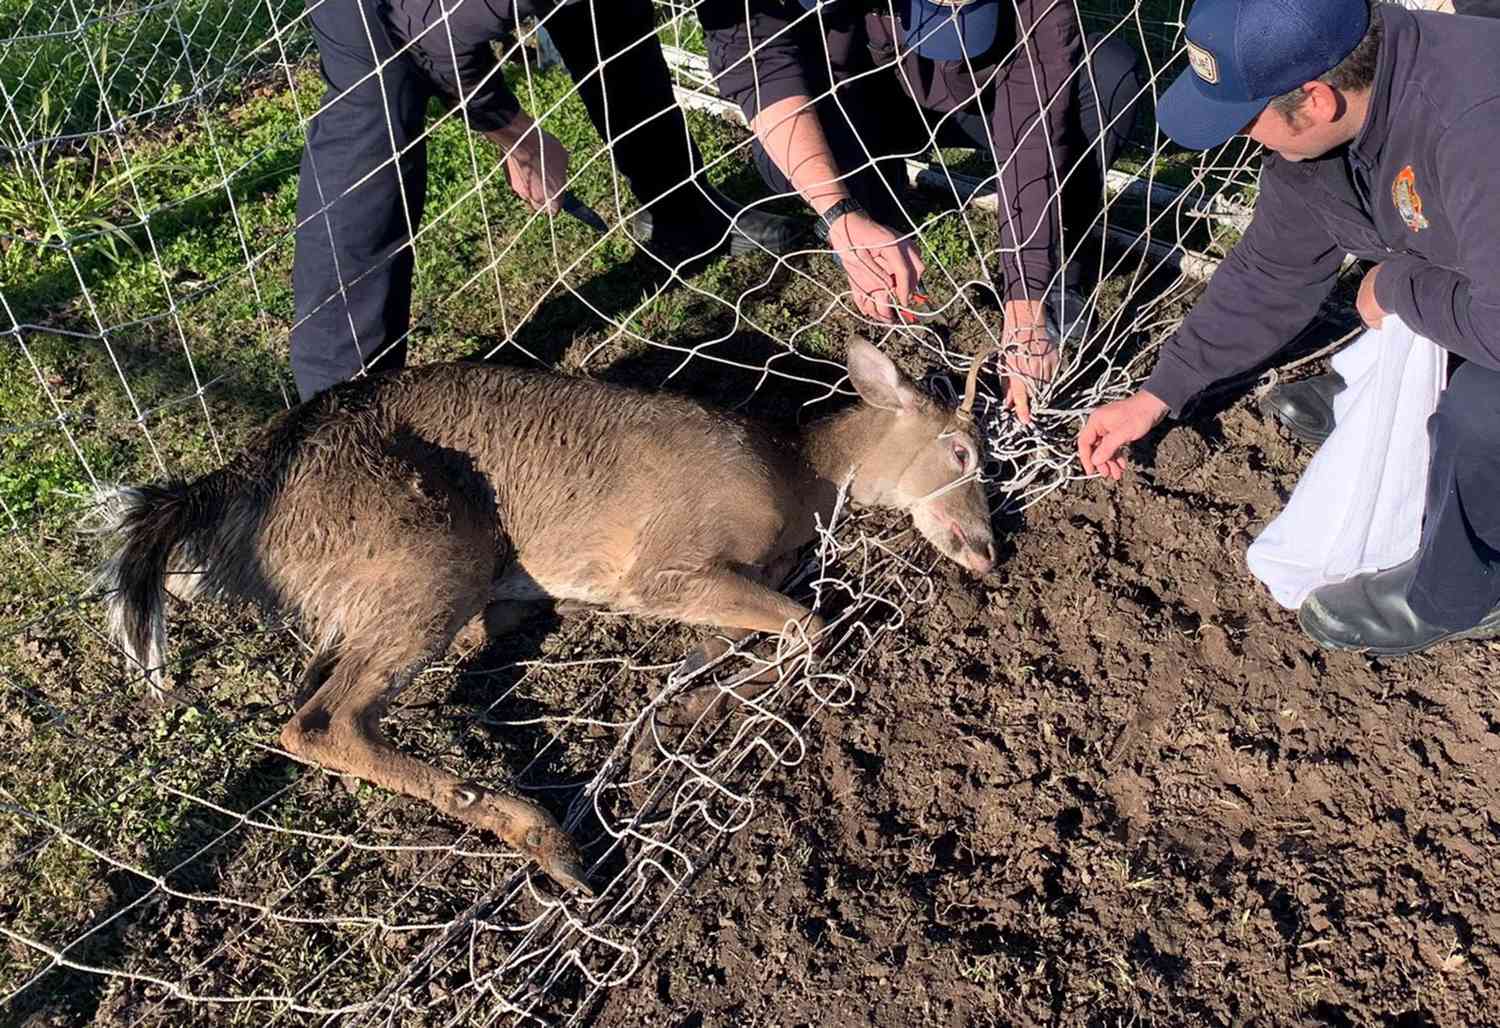 Deer stuck in net